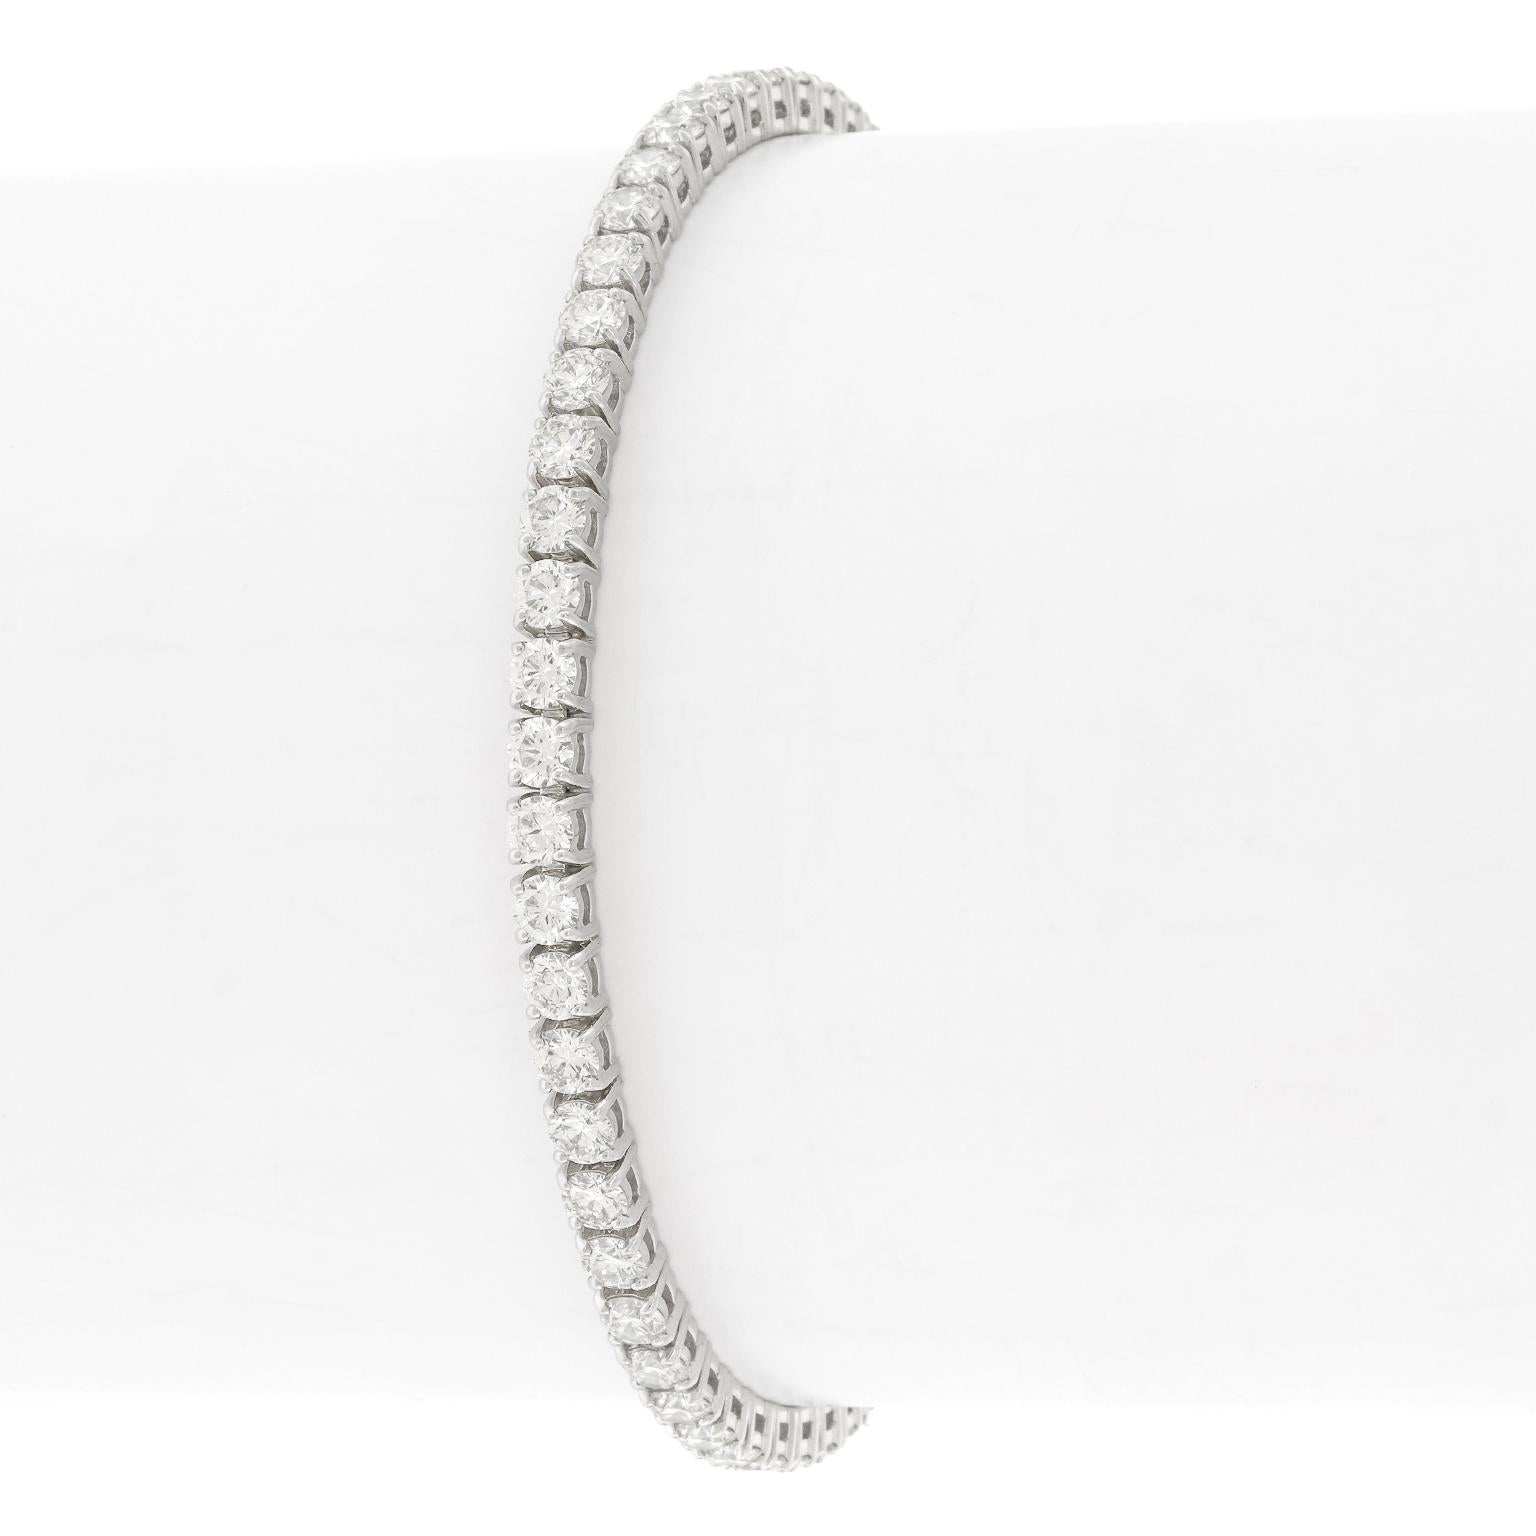 Taille brillant Bracelet ligne de diamants d'un poids total de 6,18 carats